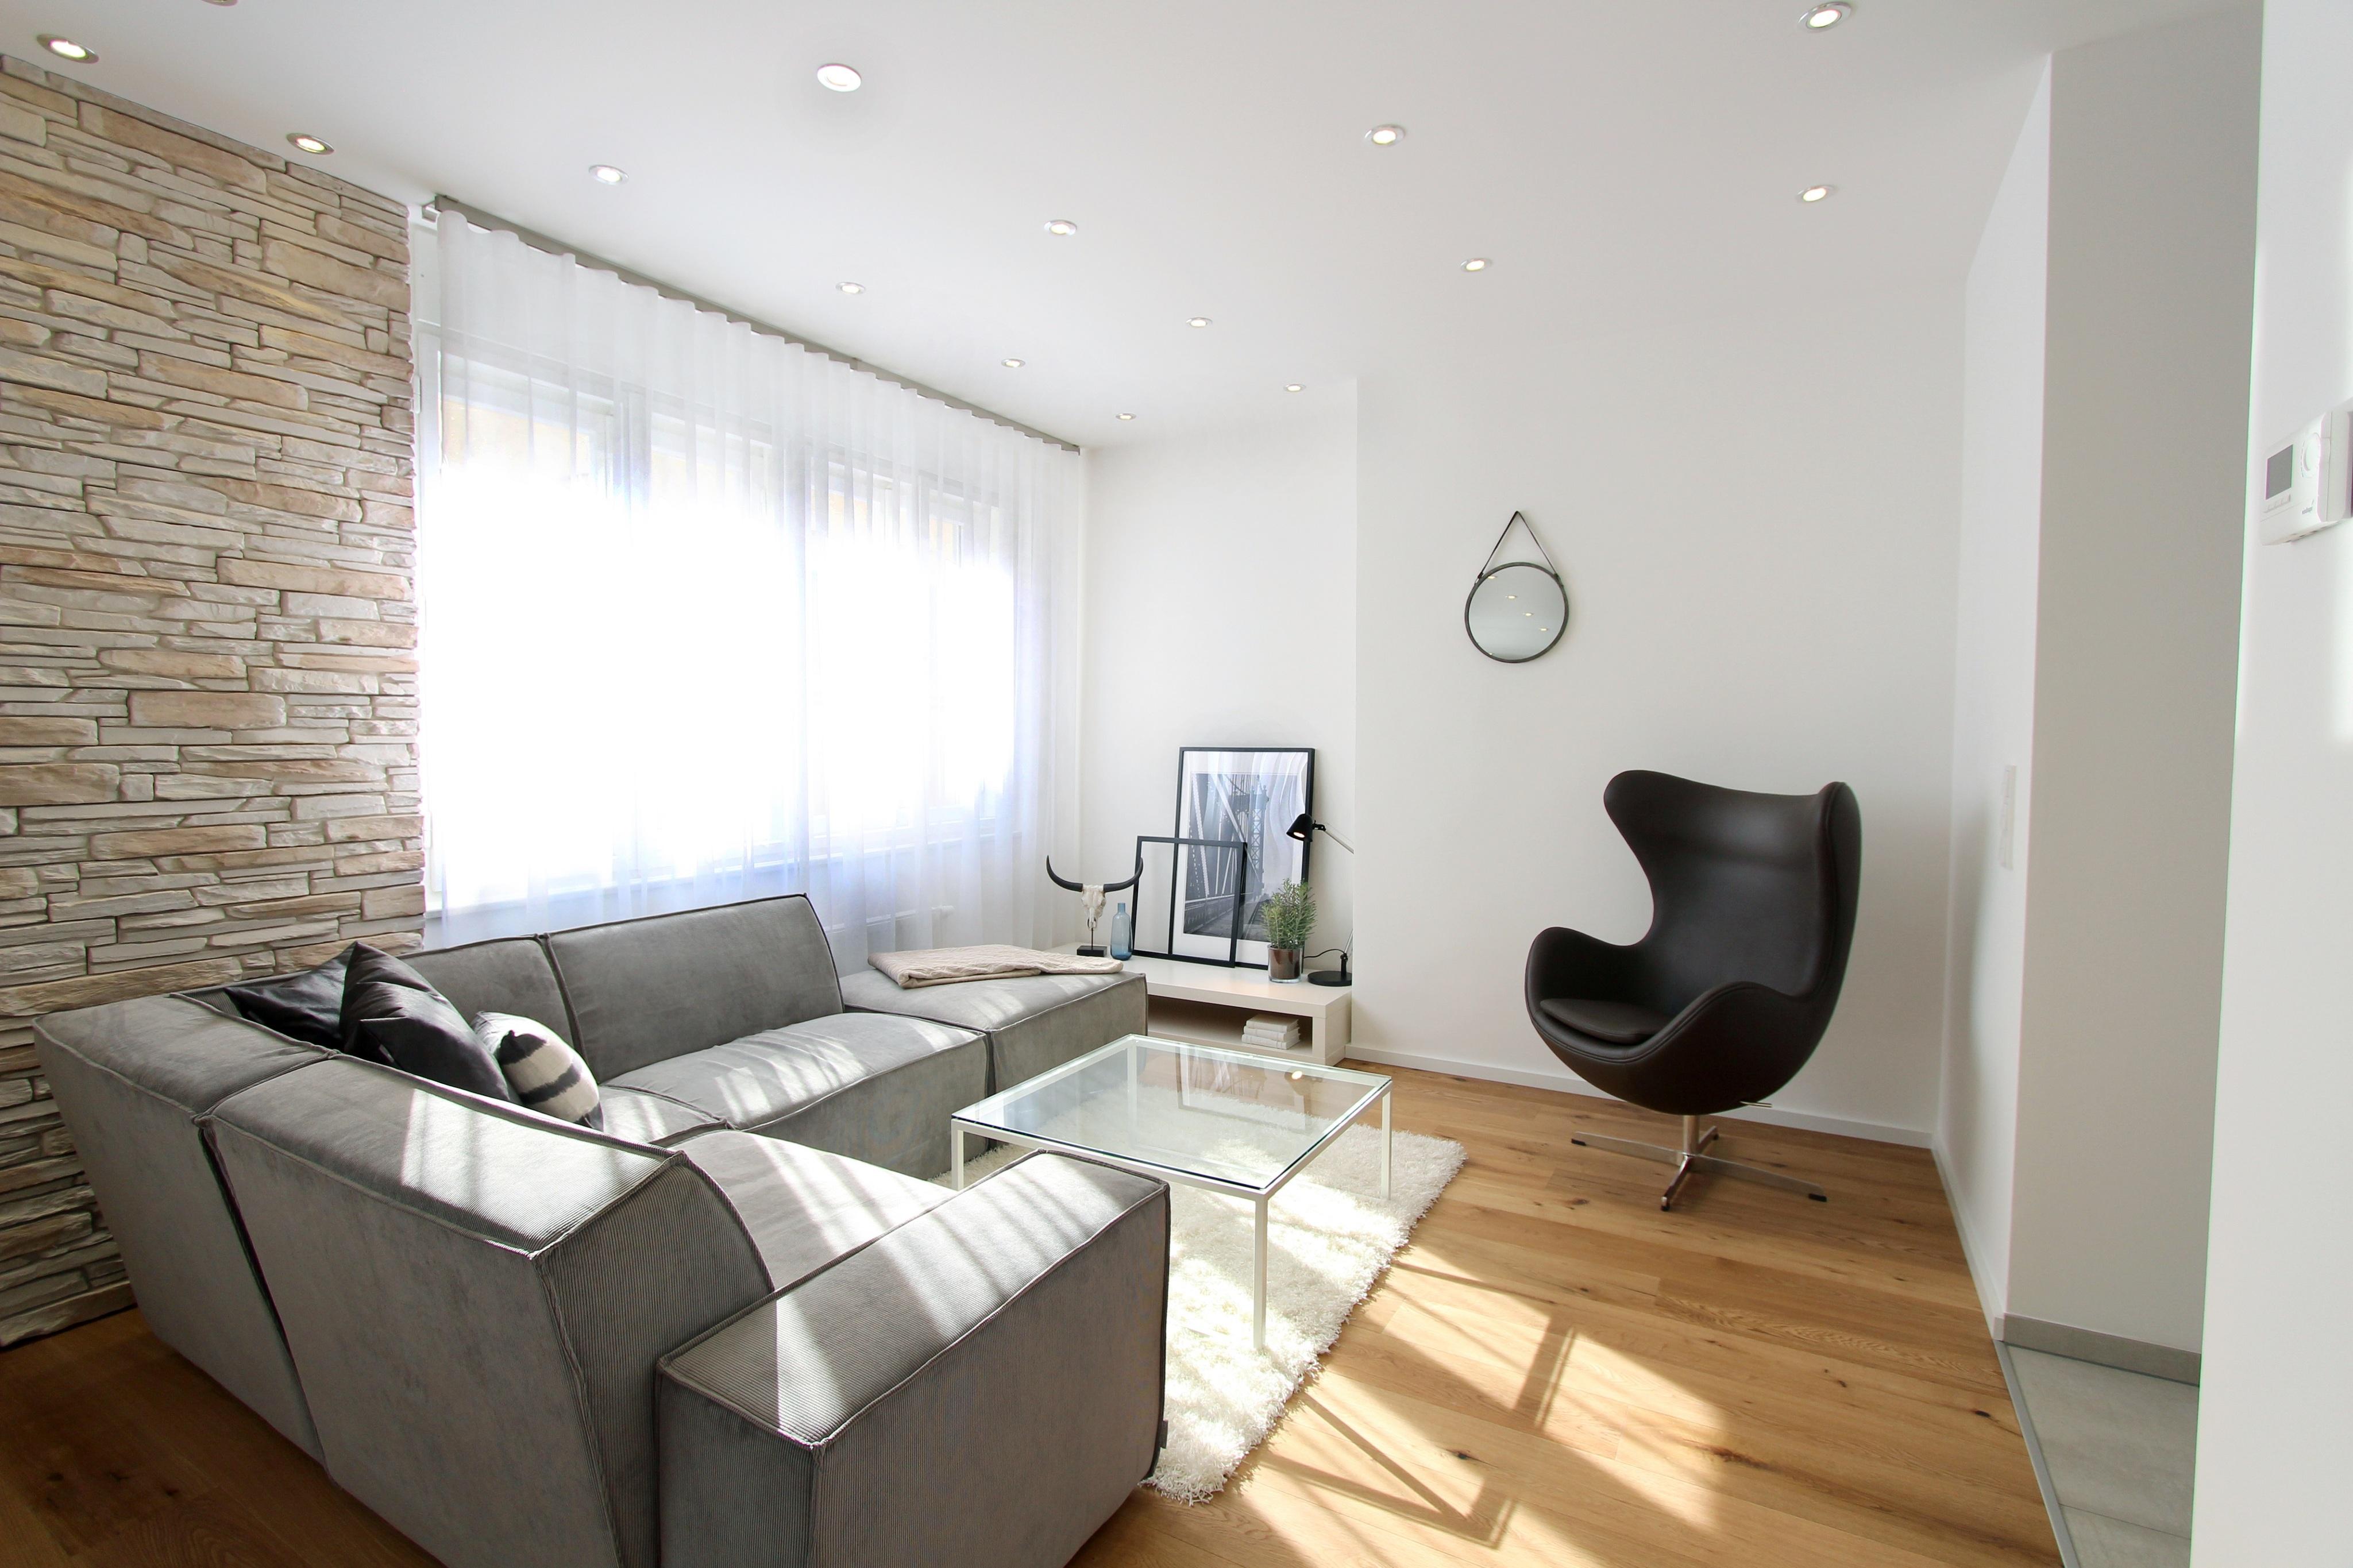 Designer Wohnzimmer #wohnzimmer #ecksofa #sofa #grauessofa #glascouchtisch #einrichtungsberatung ©Isabella Hemmer